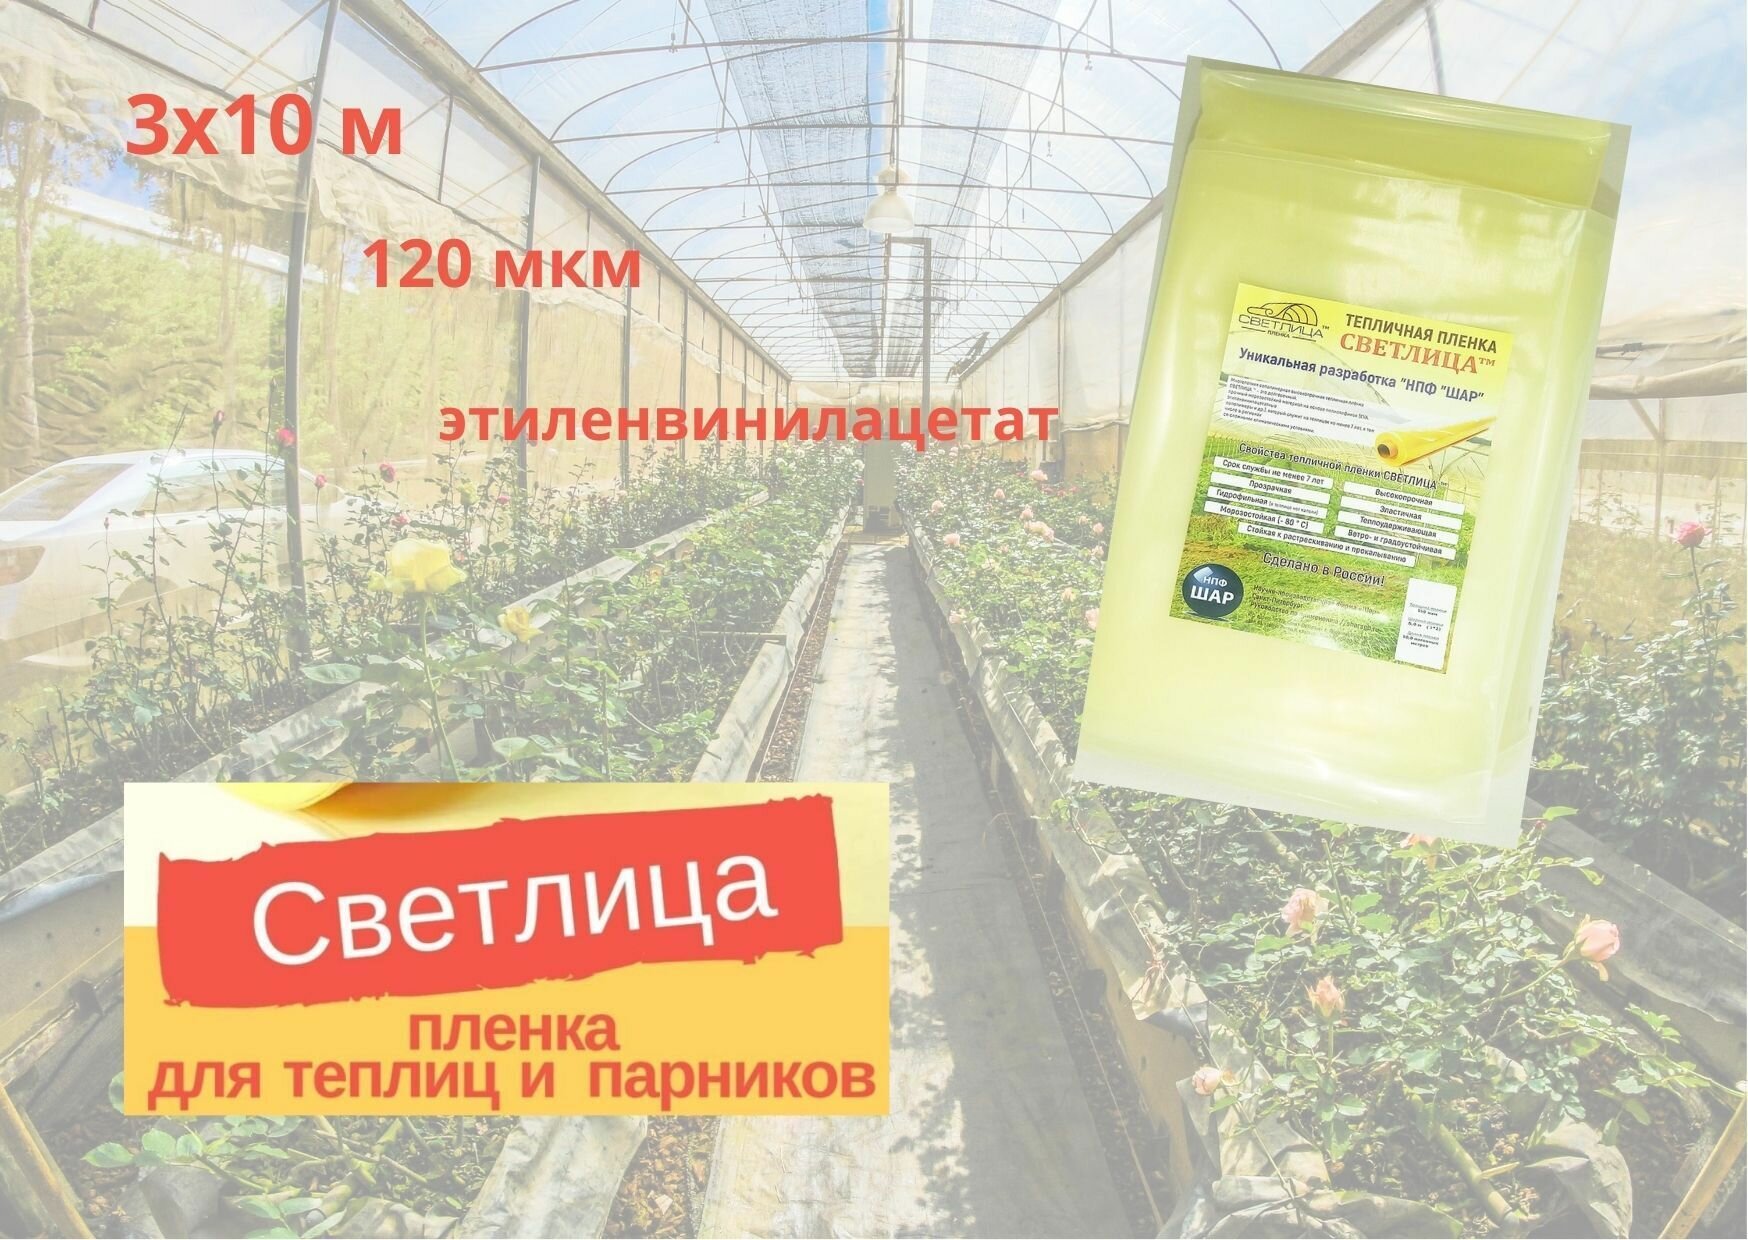 Пленка садовая / укрывной материал для растений 3x10м для теплиц для парника этиленвинилацетат многолетняя 120мкм 1 шт желтая